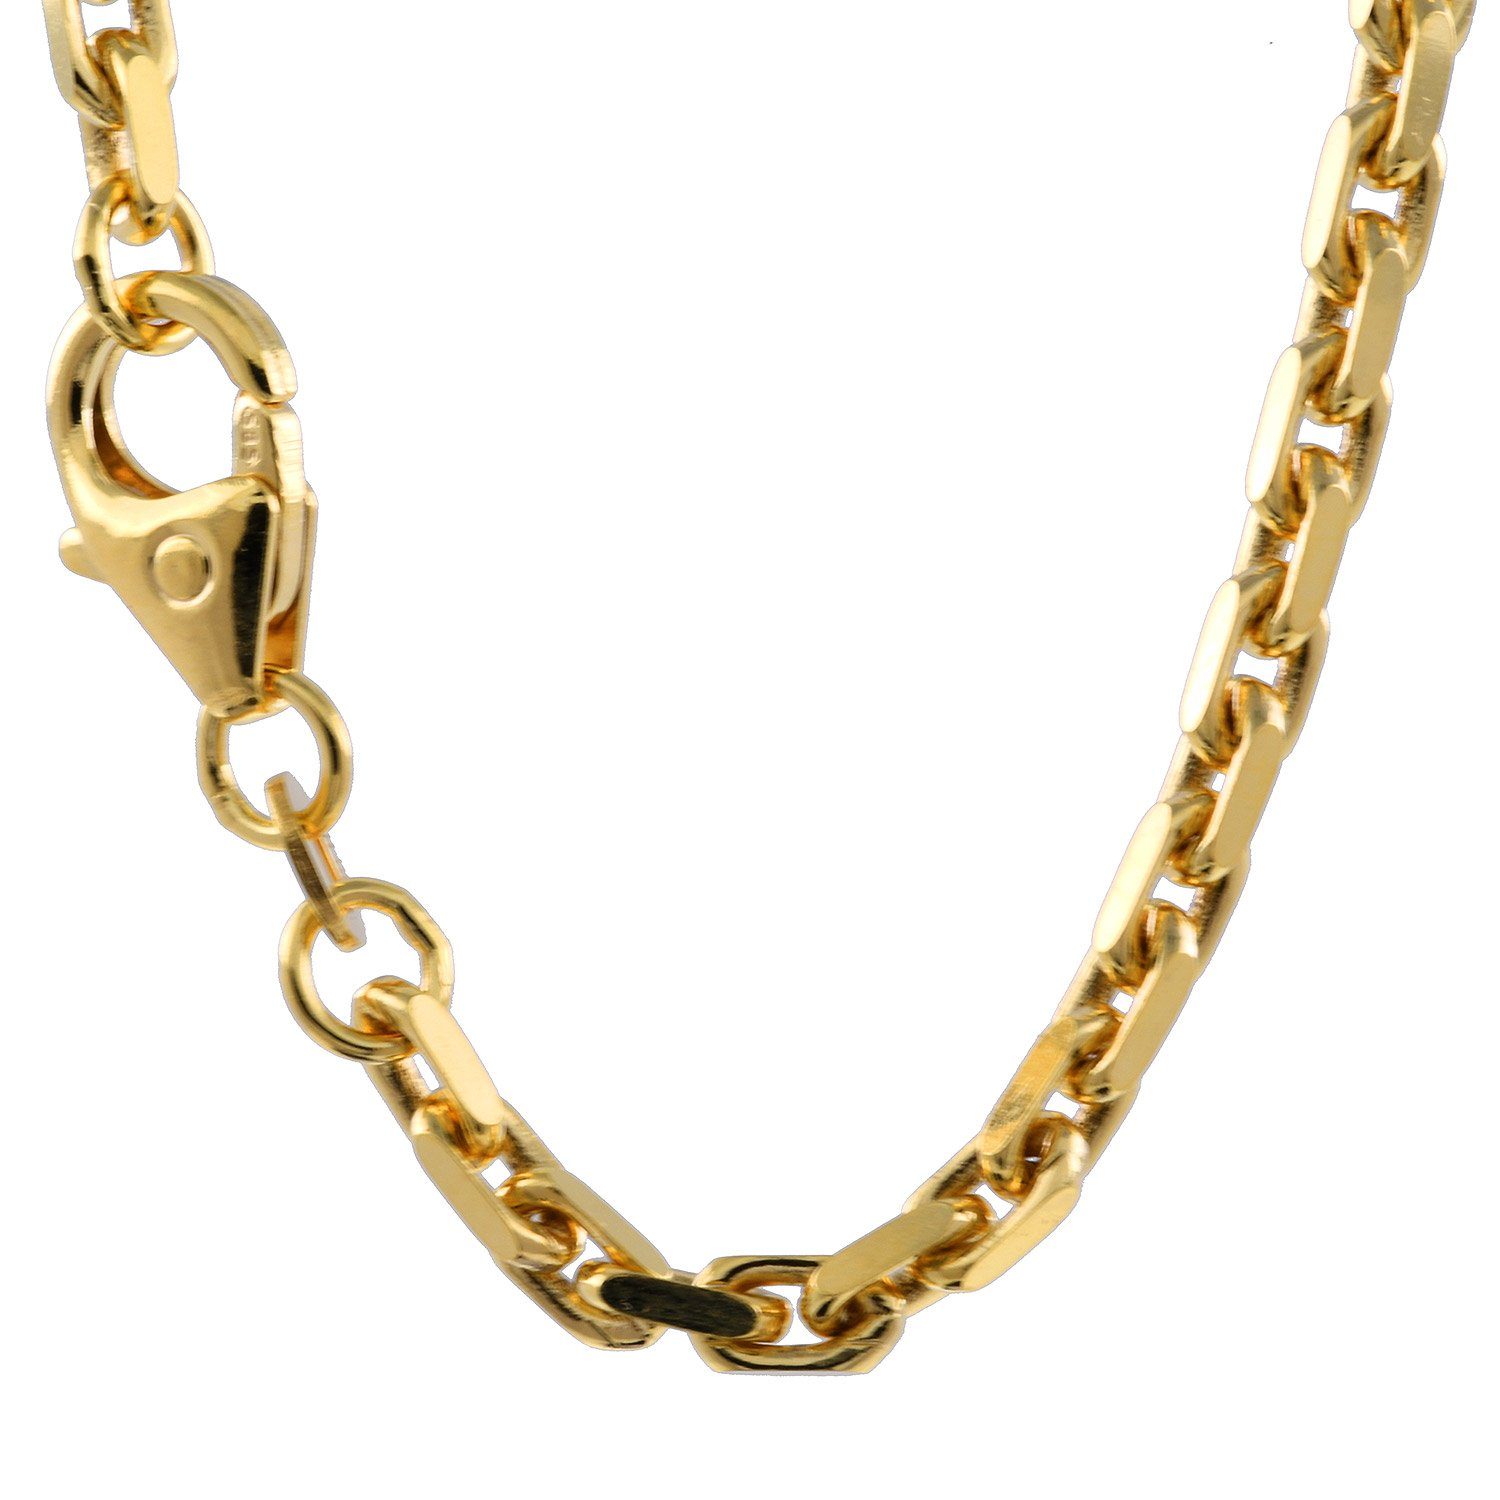 HOPLO Goldarmband 2,5 mm 750 - 18 Karat Gold Armkette Ankerkette  diamantiert massiv Gold hochwertige Goldkette - Länge nach Wahl